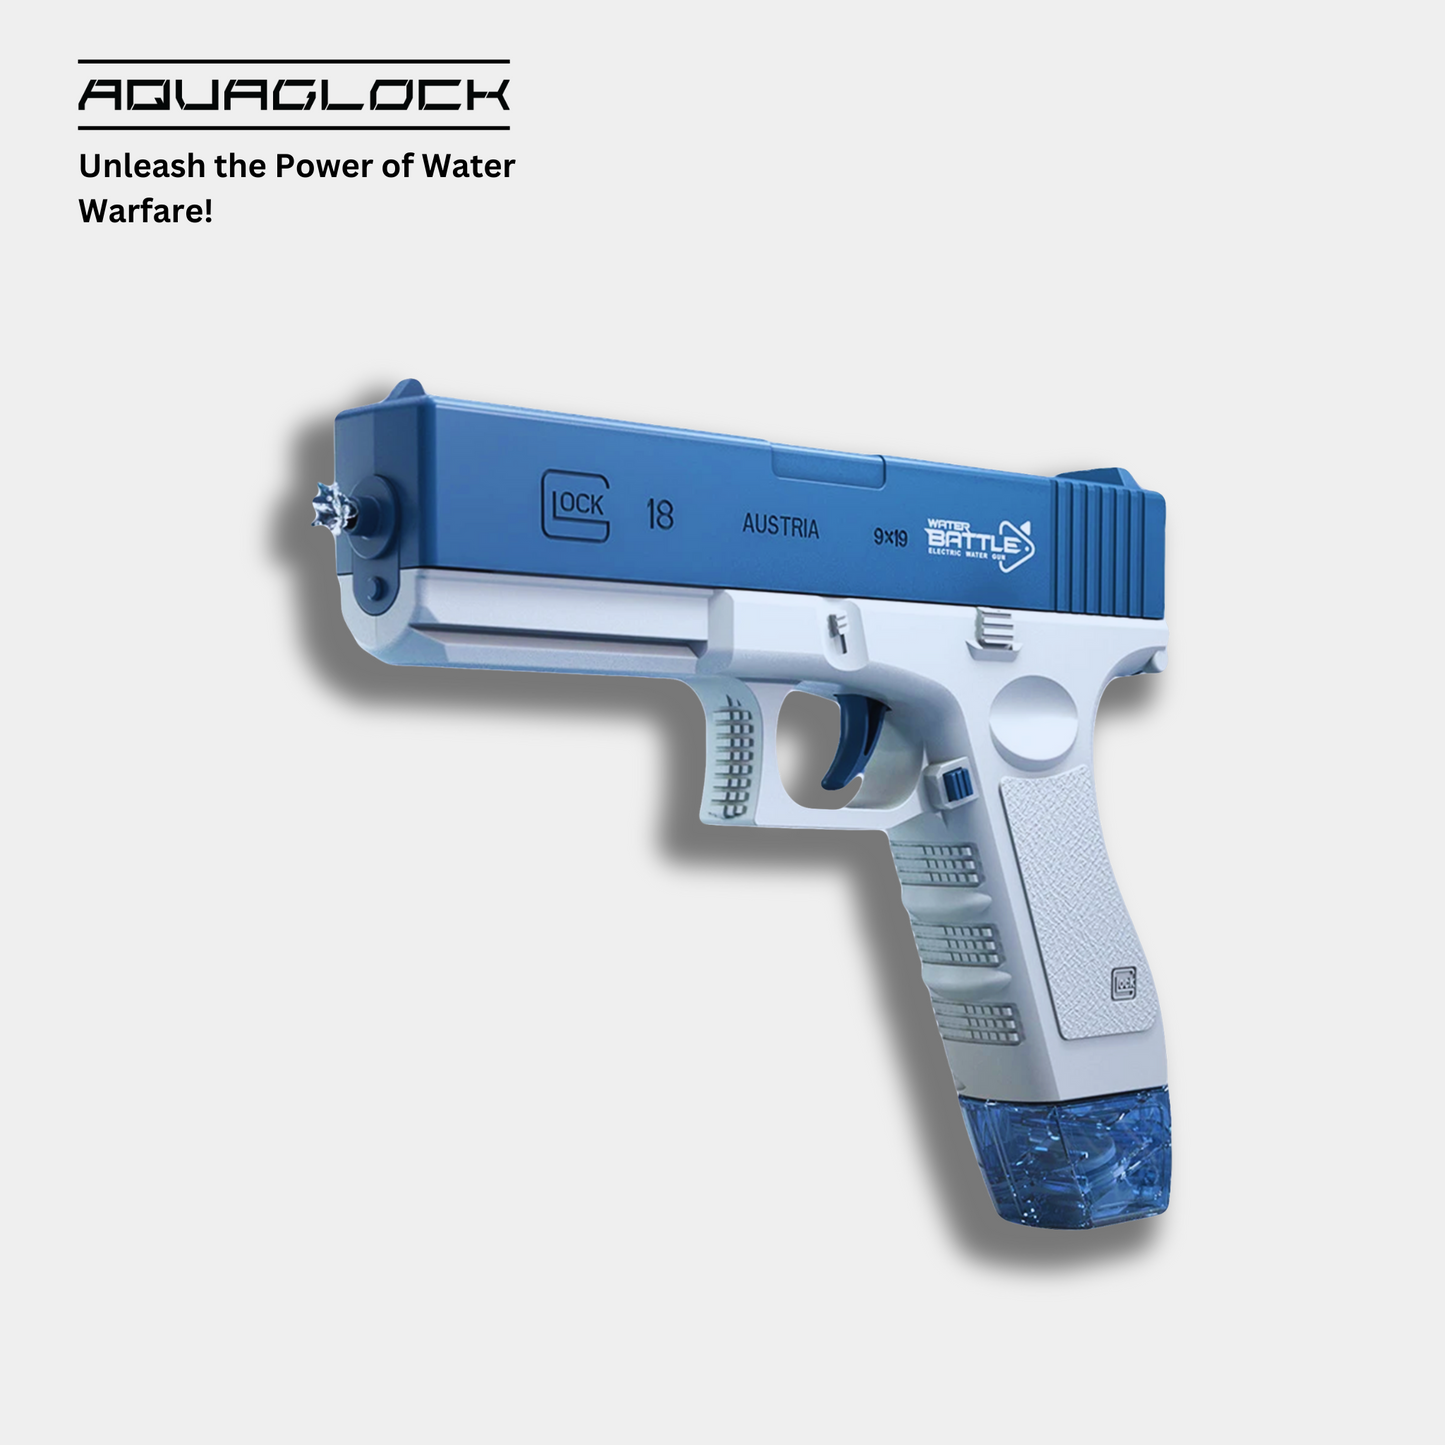 AquaGlock Electric Water Gun